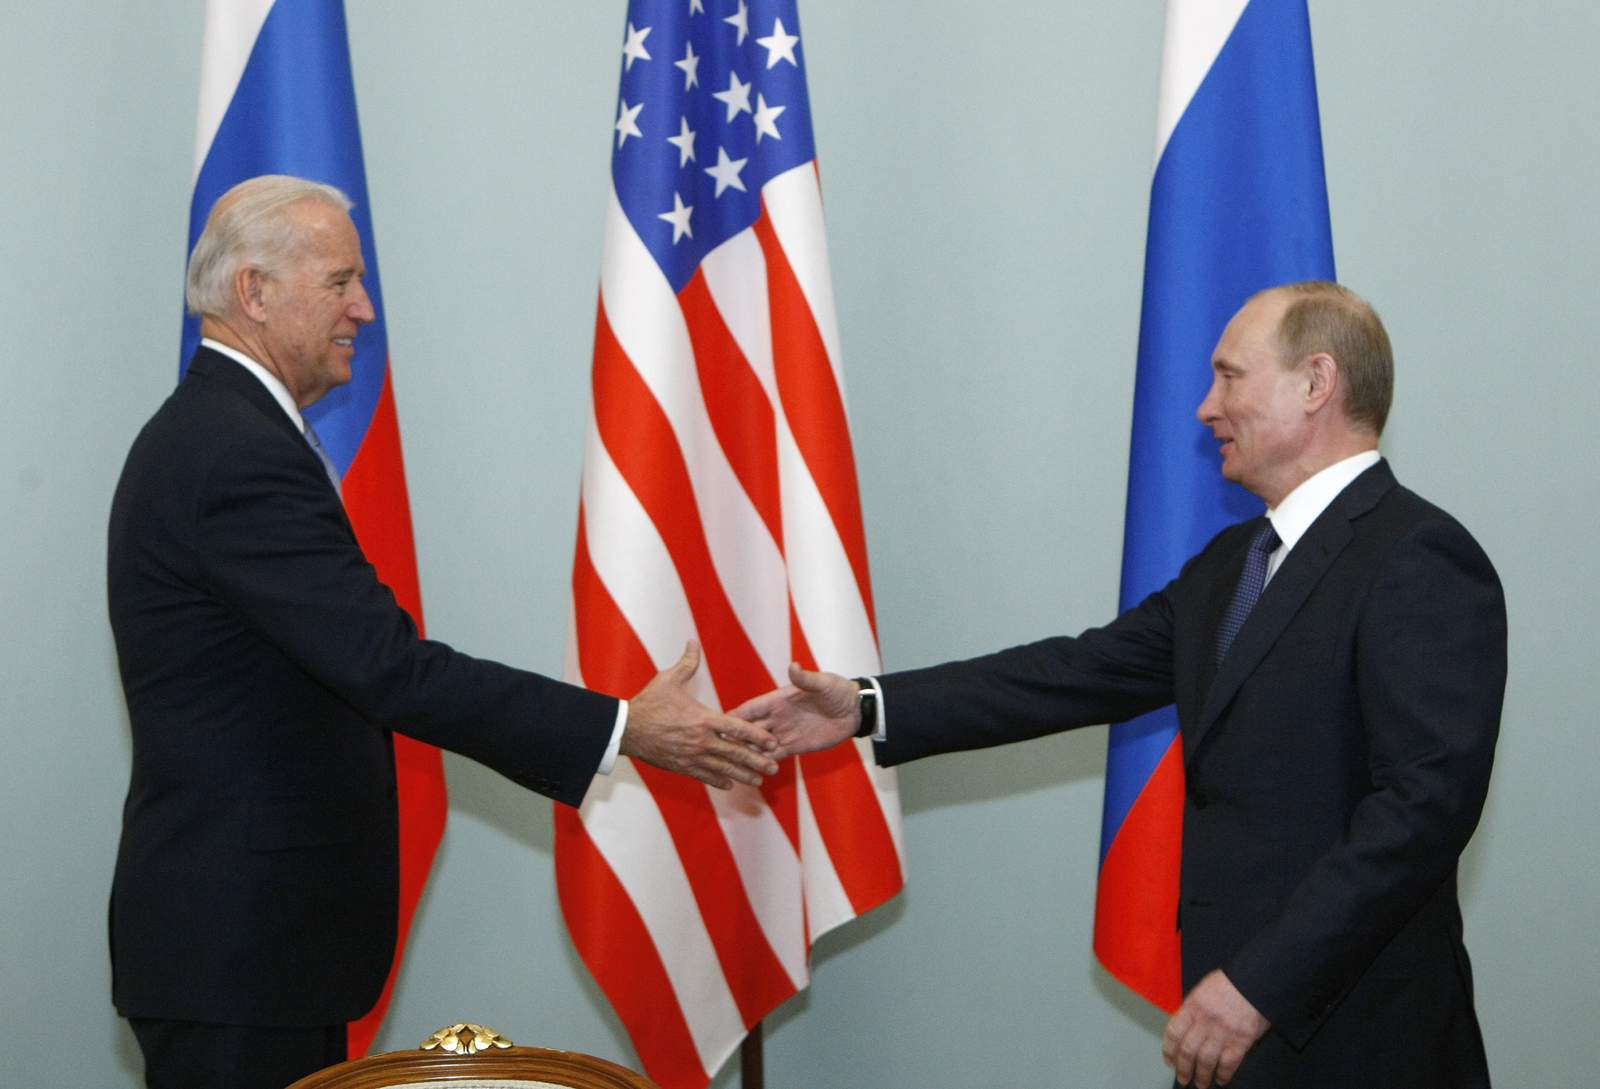 Kremlin: Putin won't congratulate Biden until challenges end